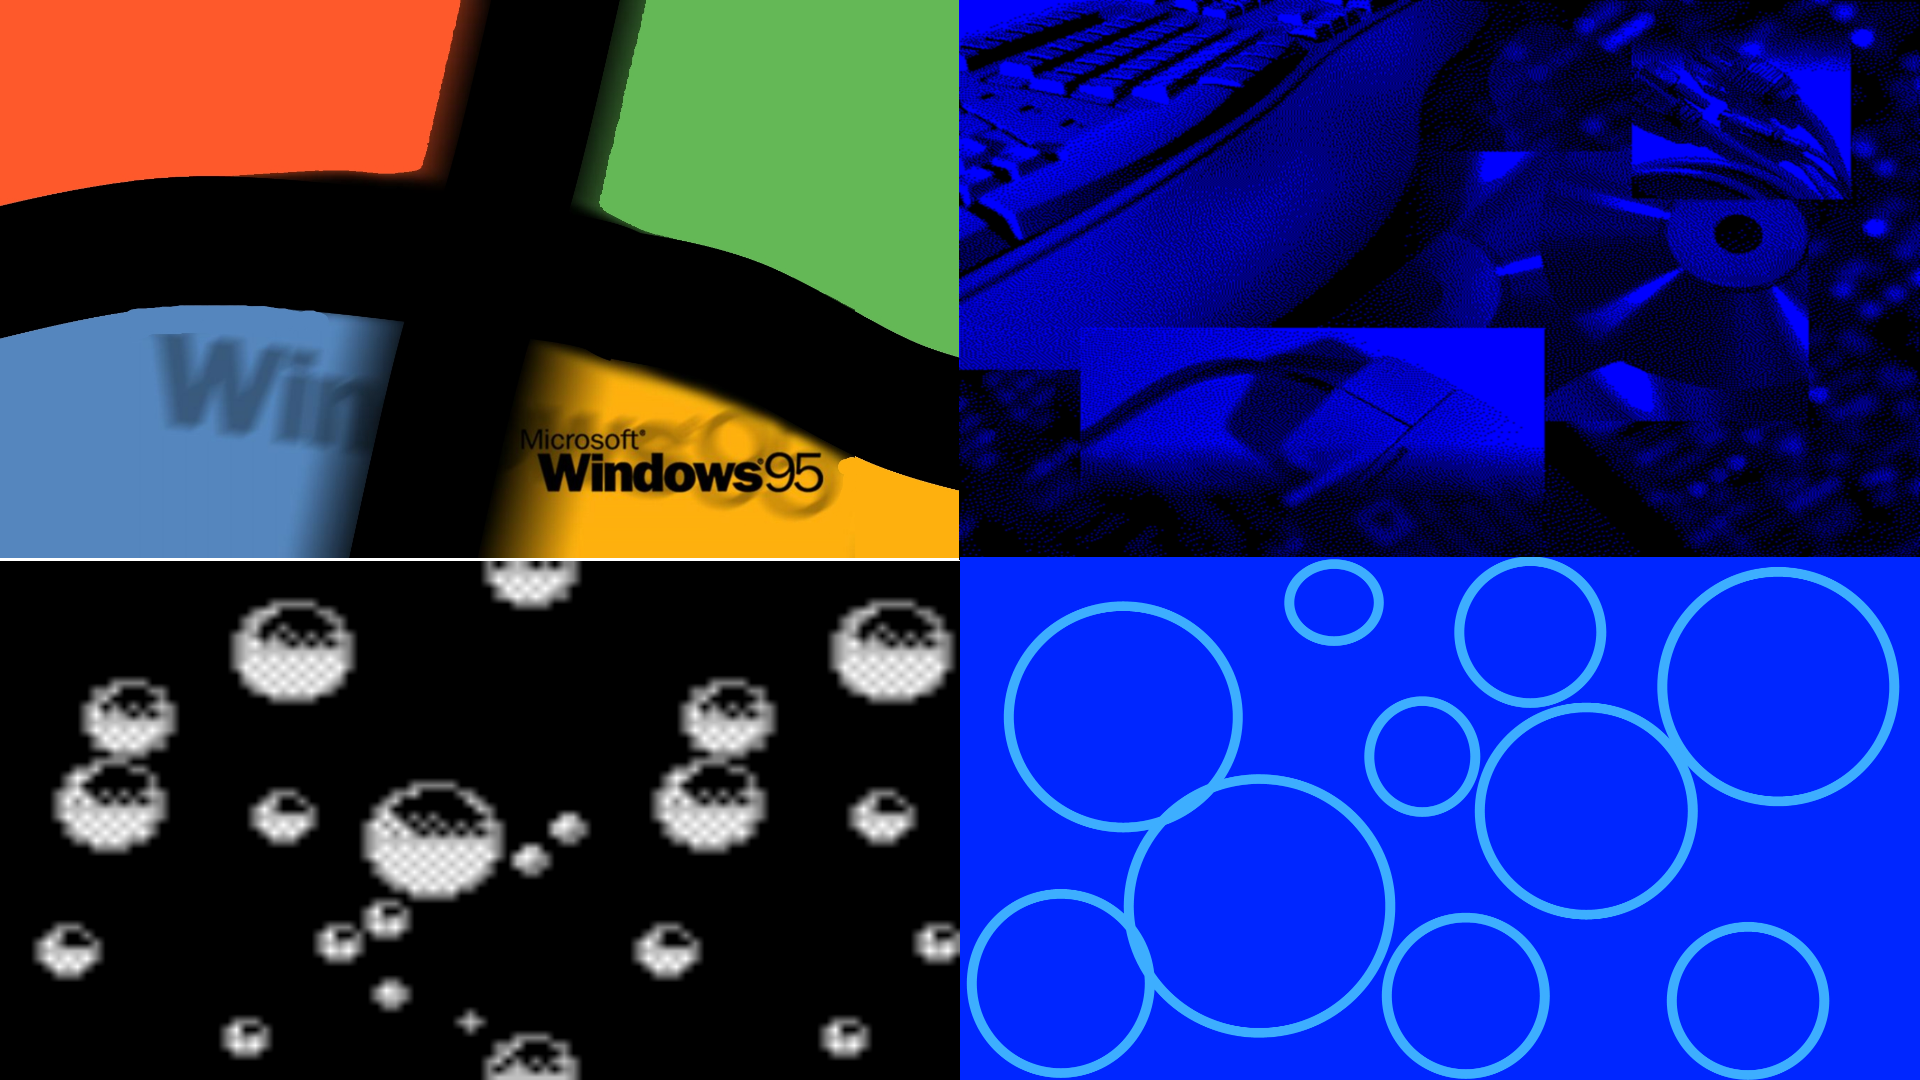 Bộ hình nền Windows 95: Đừng bỏ lỡ bộ sưu tập hình nền Windows 95 đầy quyến rũ và ấn tượng này. Bộ sưu tập này làm mới nhiều hình nền kinh điển của Windows 95 trong năm 1995, mang đến cho bạn sự đa dạng và sự lựa chọn đa dạng cho nền tảng máy tính của bạn.